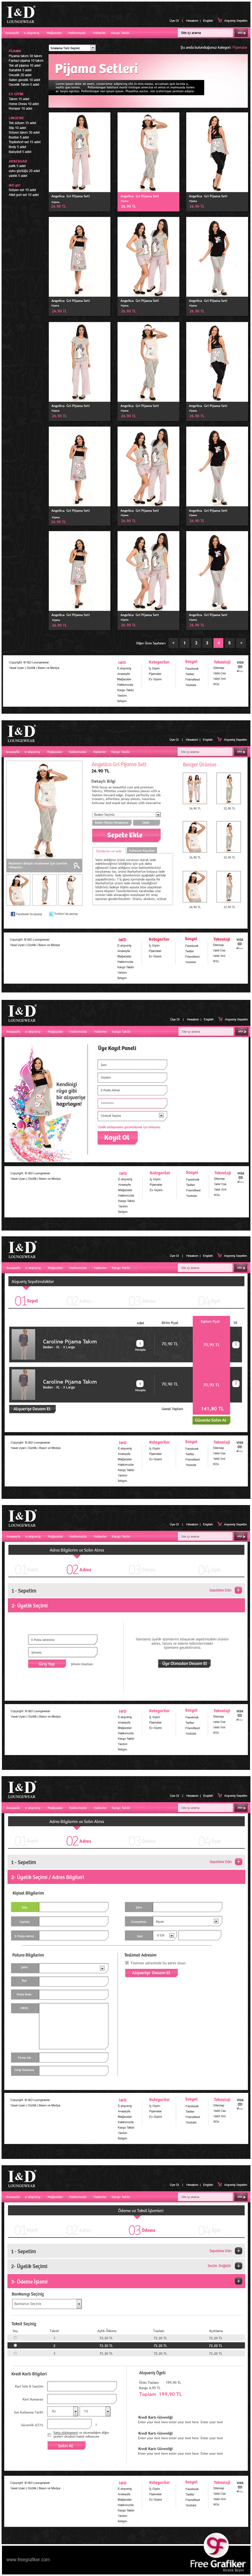 id.com.tr e ticaret sitesi alt sayfa arayüz tasarımları